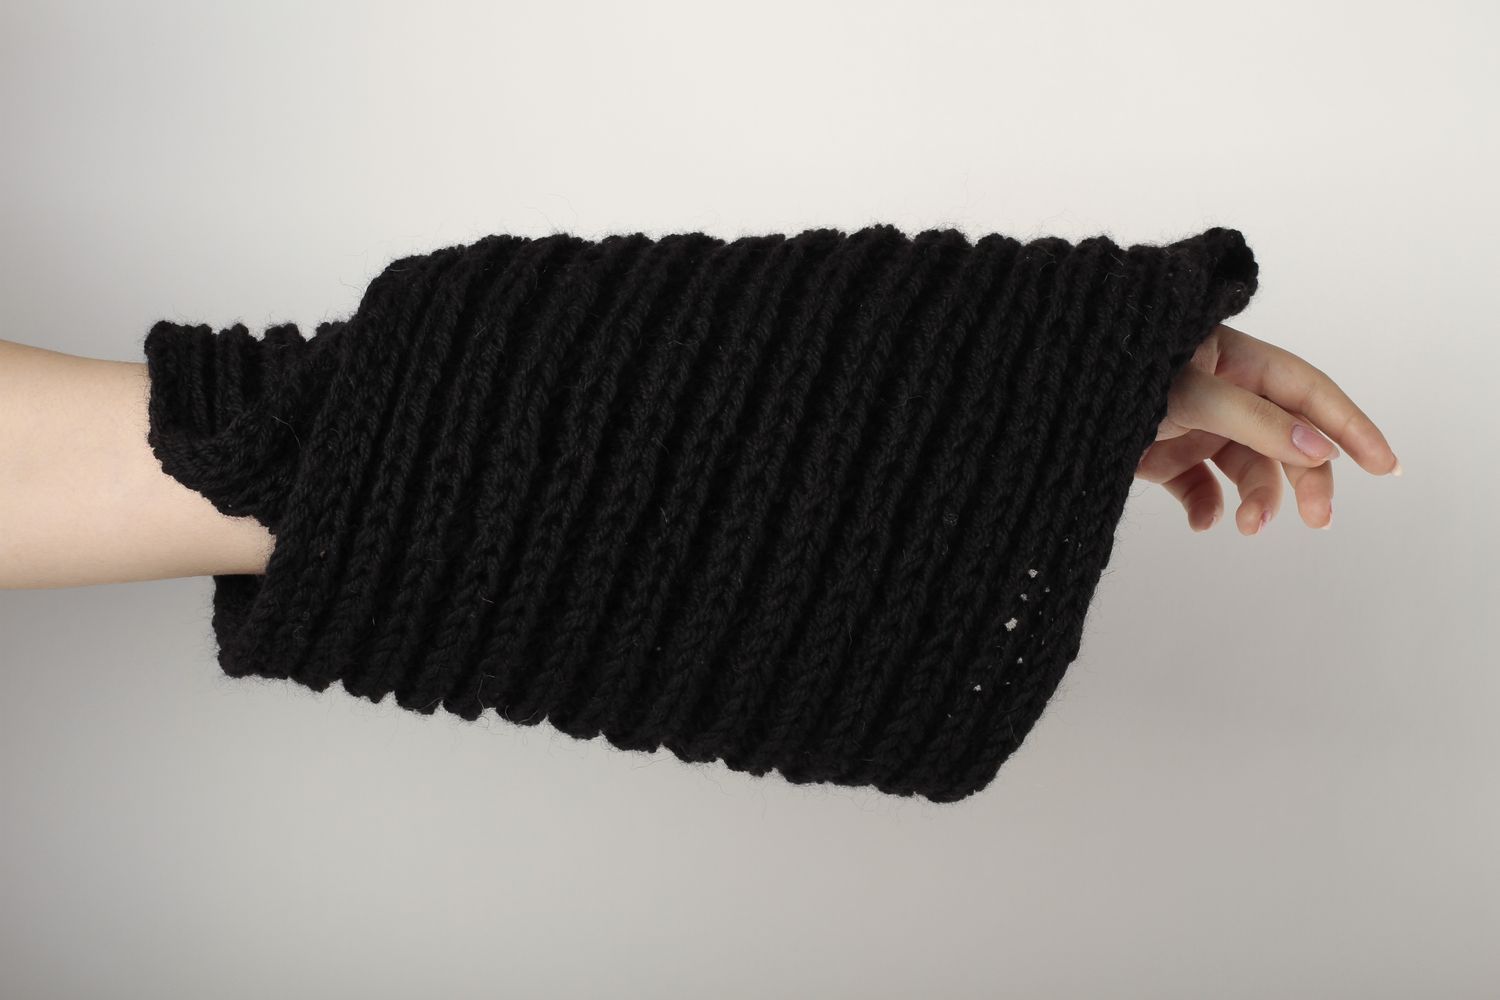 Écharpe noire faite main Vêtement femme en laine chaude d'hiver Idée cadeau photo 1